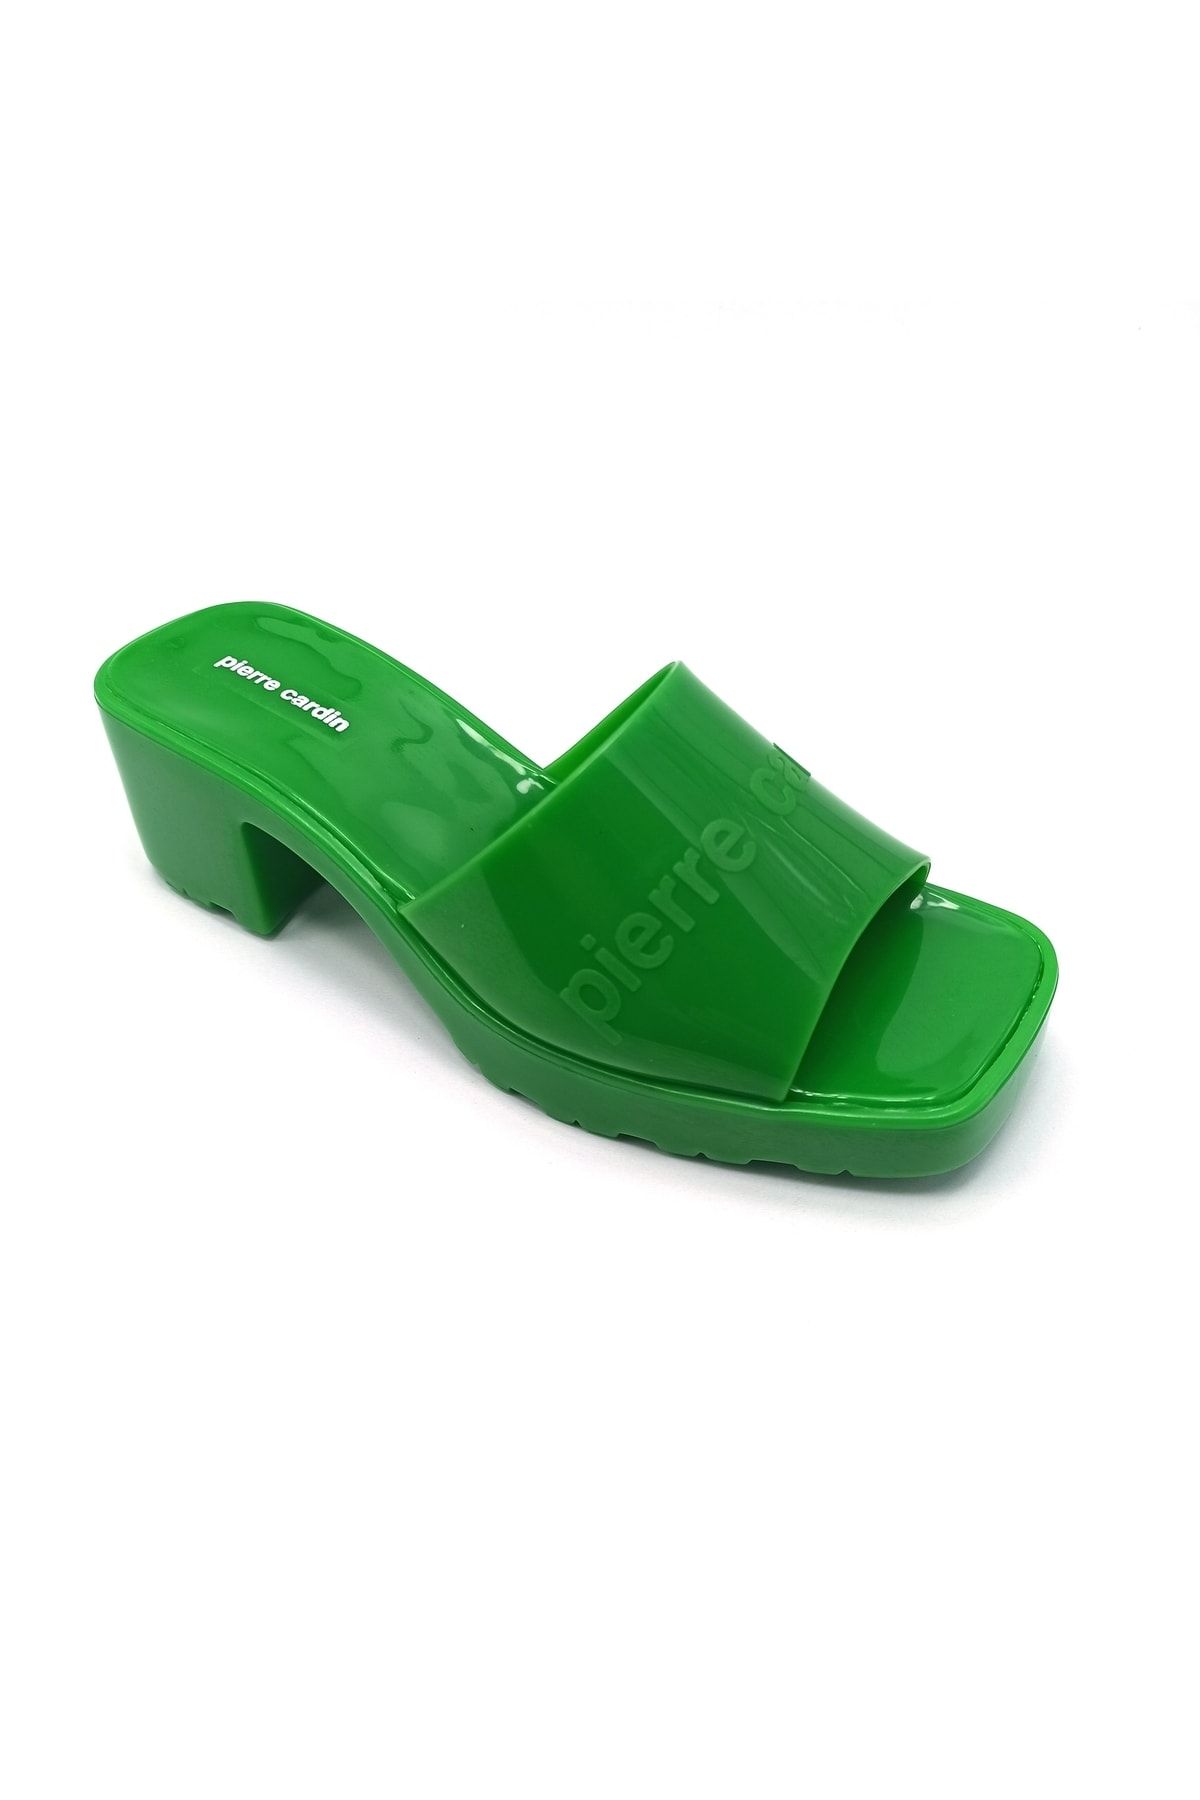 Pierre Cardin Yeşil Kadın Topuklu Terlik Ayakkabı